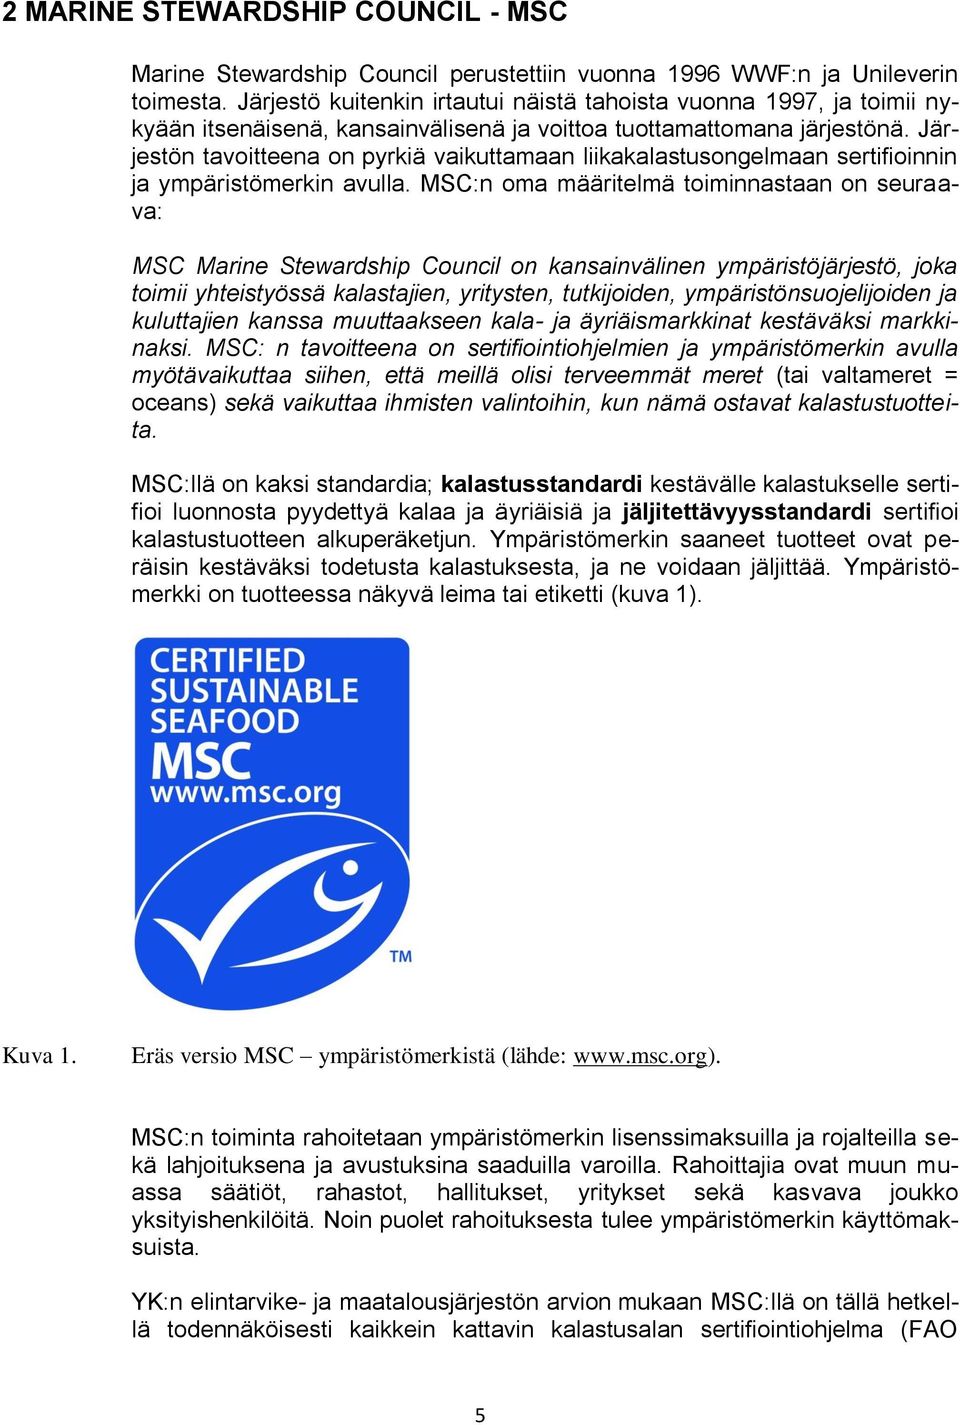 Järjestön tavoitteena on pyrkiä vaikuttamaan liikakalastusongelmaan sertifioinnin ja ympäristömerkin avulla.